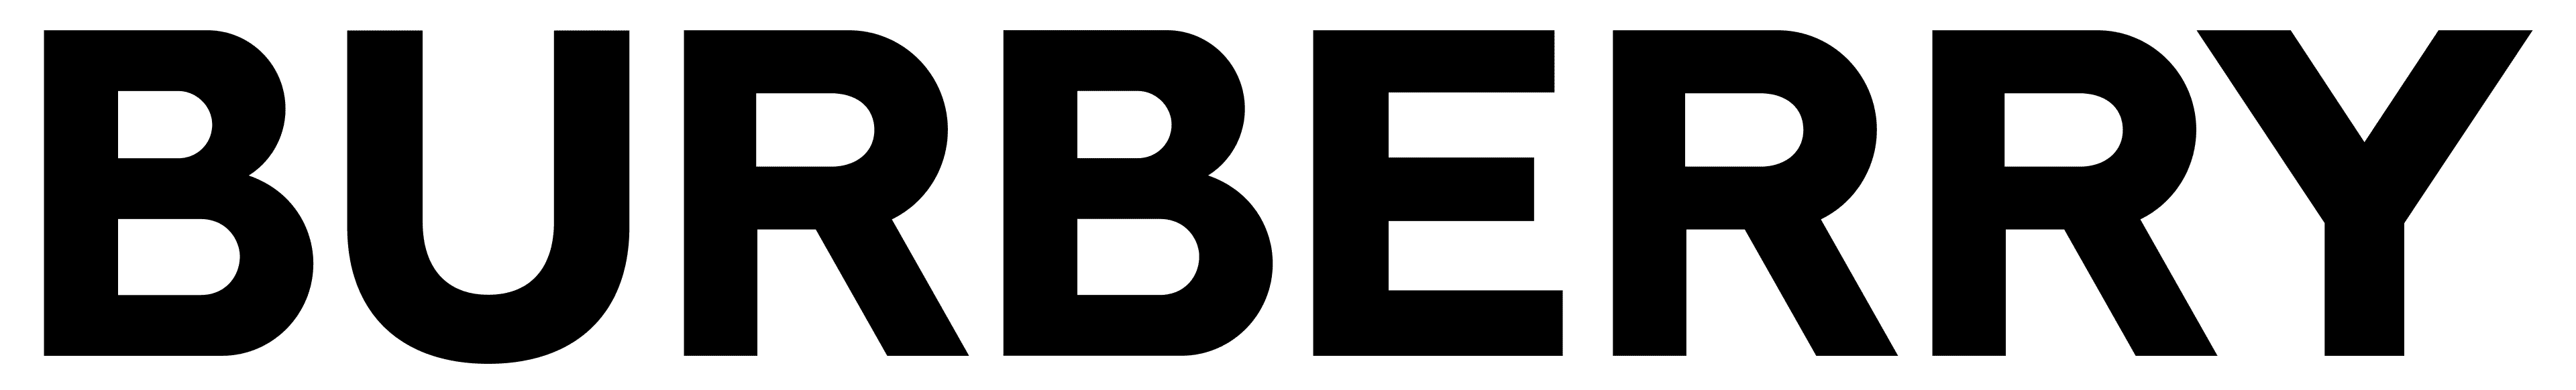 Burberry-logo